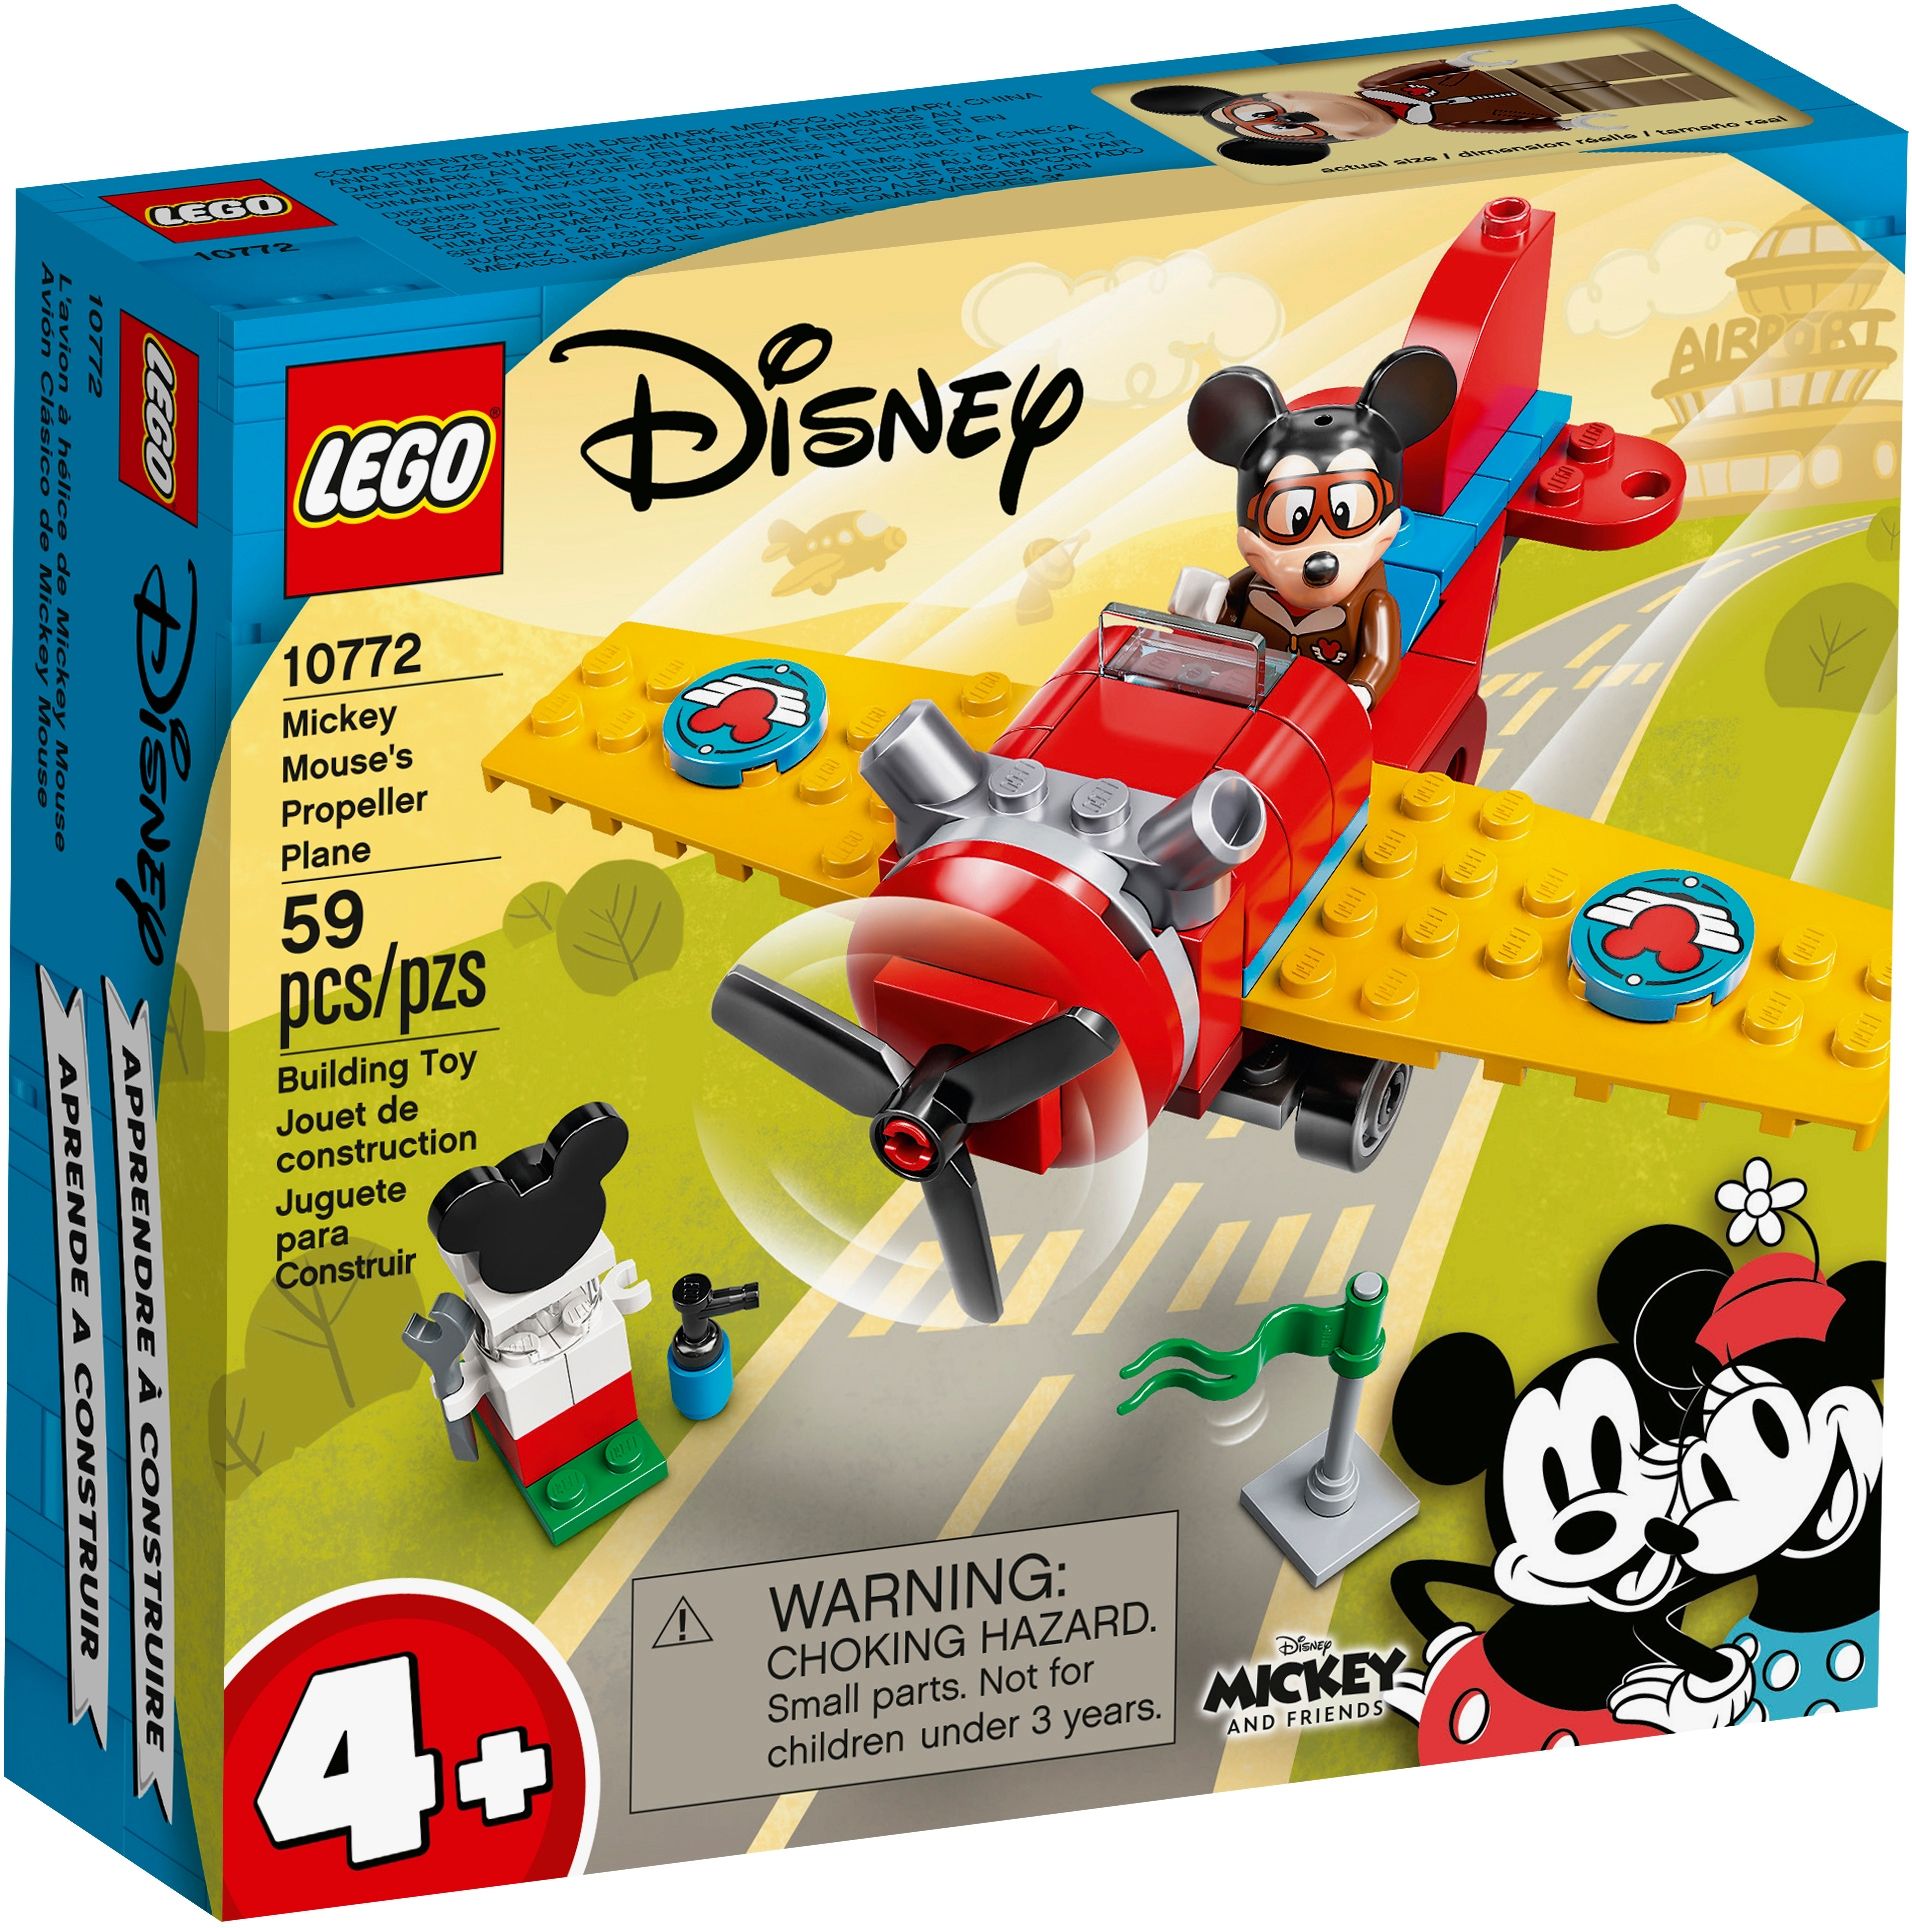 LEGO Disney 10772 Mickys Propellerflugzeug LEGO_10772_box1_v39.jpg